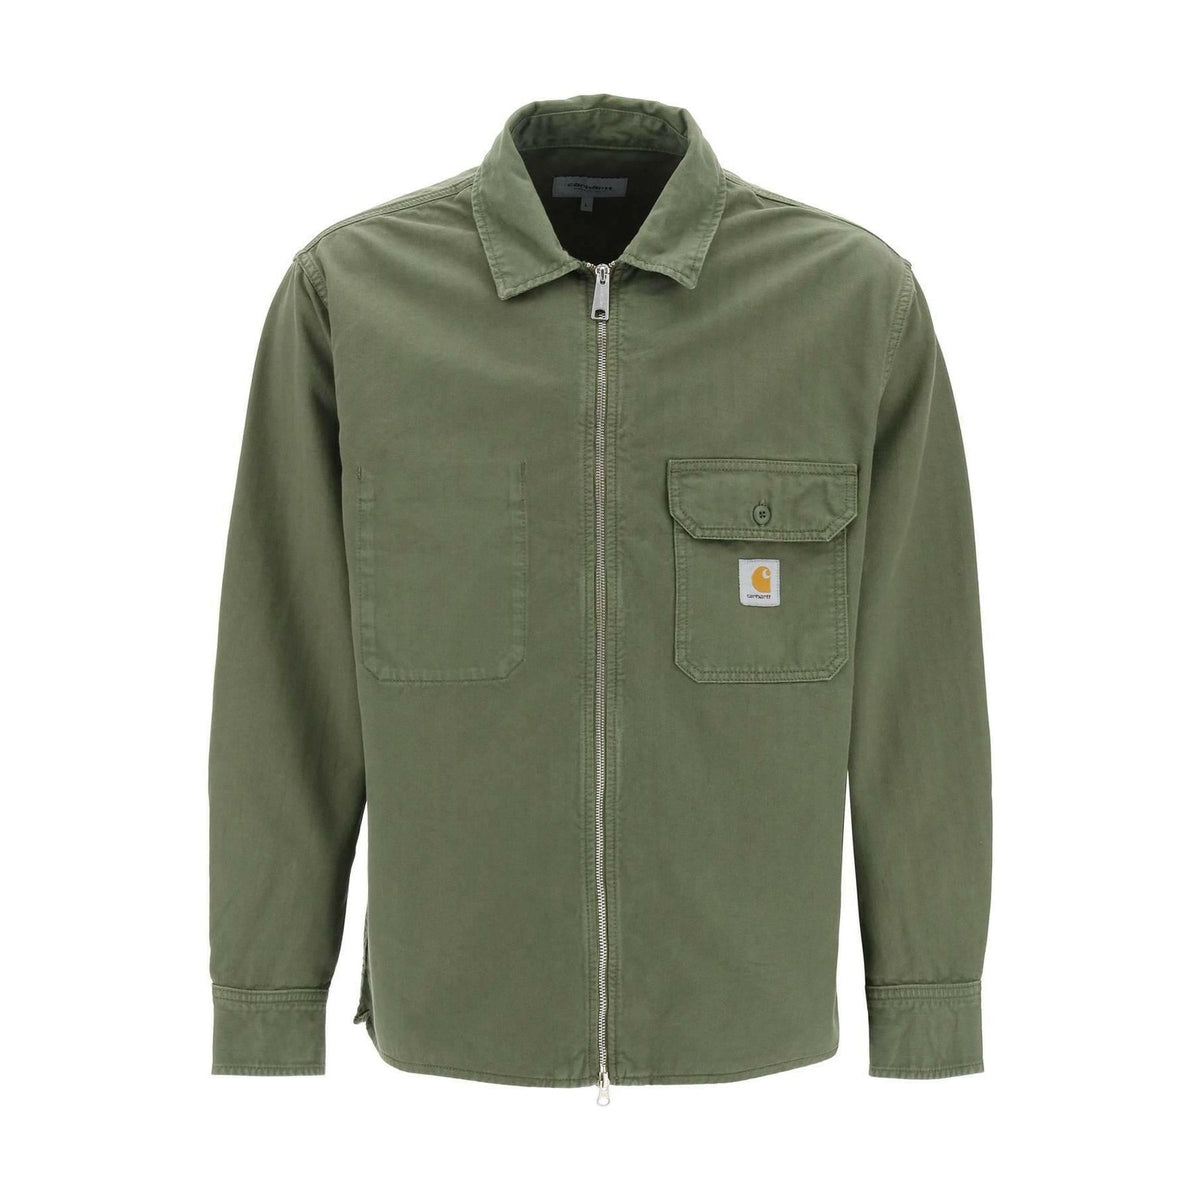 Dundee Green Rainer Garment-Dyed Shirt Jacket CARHARTT WIP JOHN JULIA.